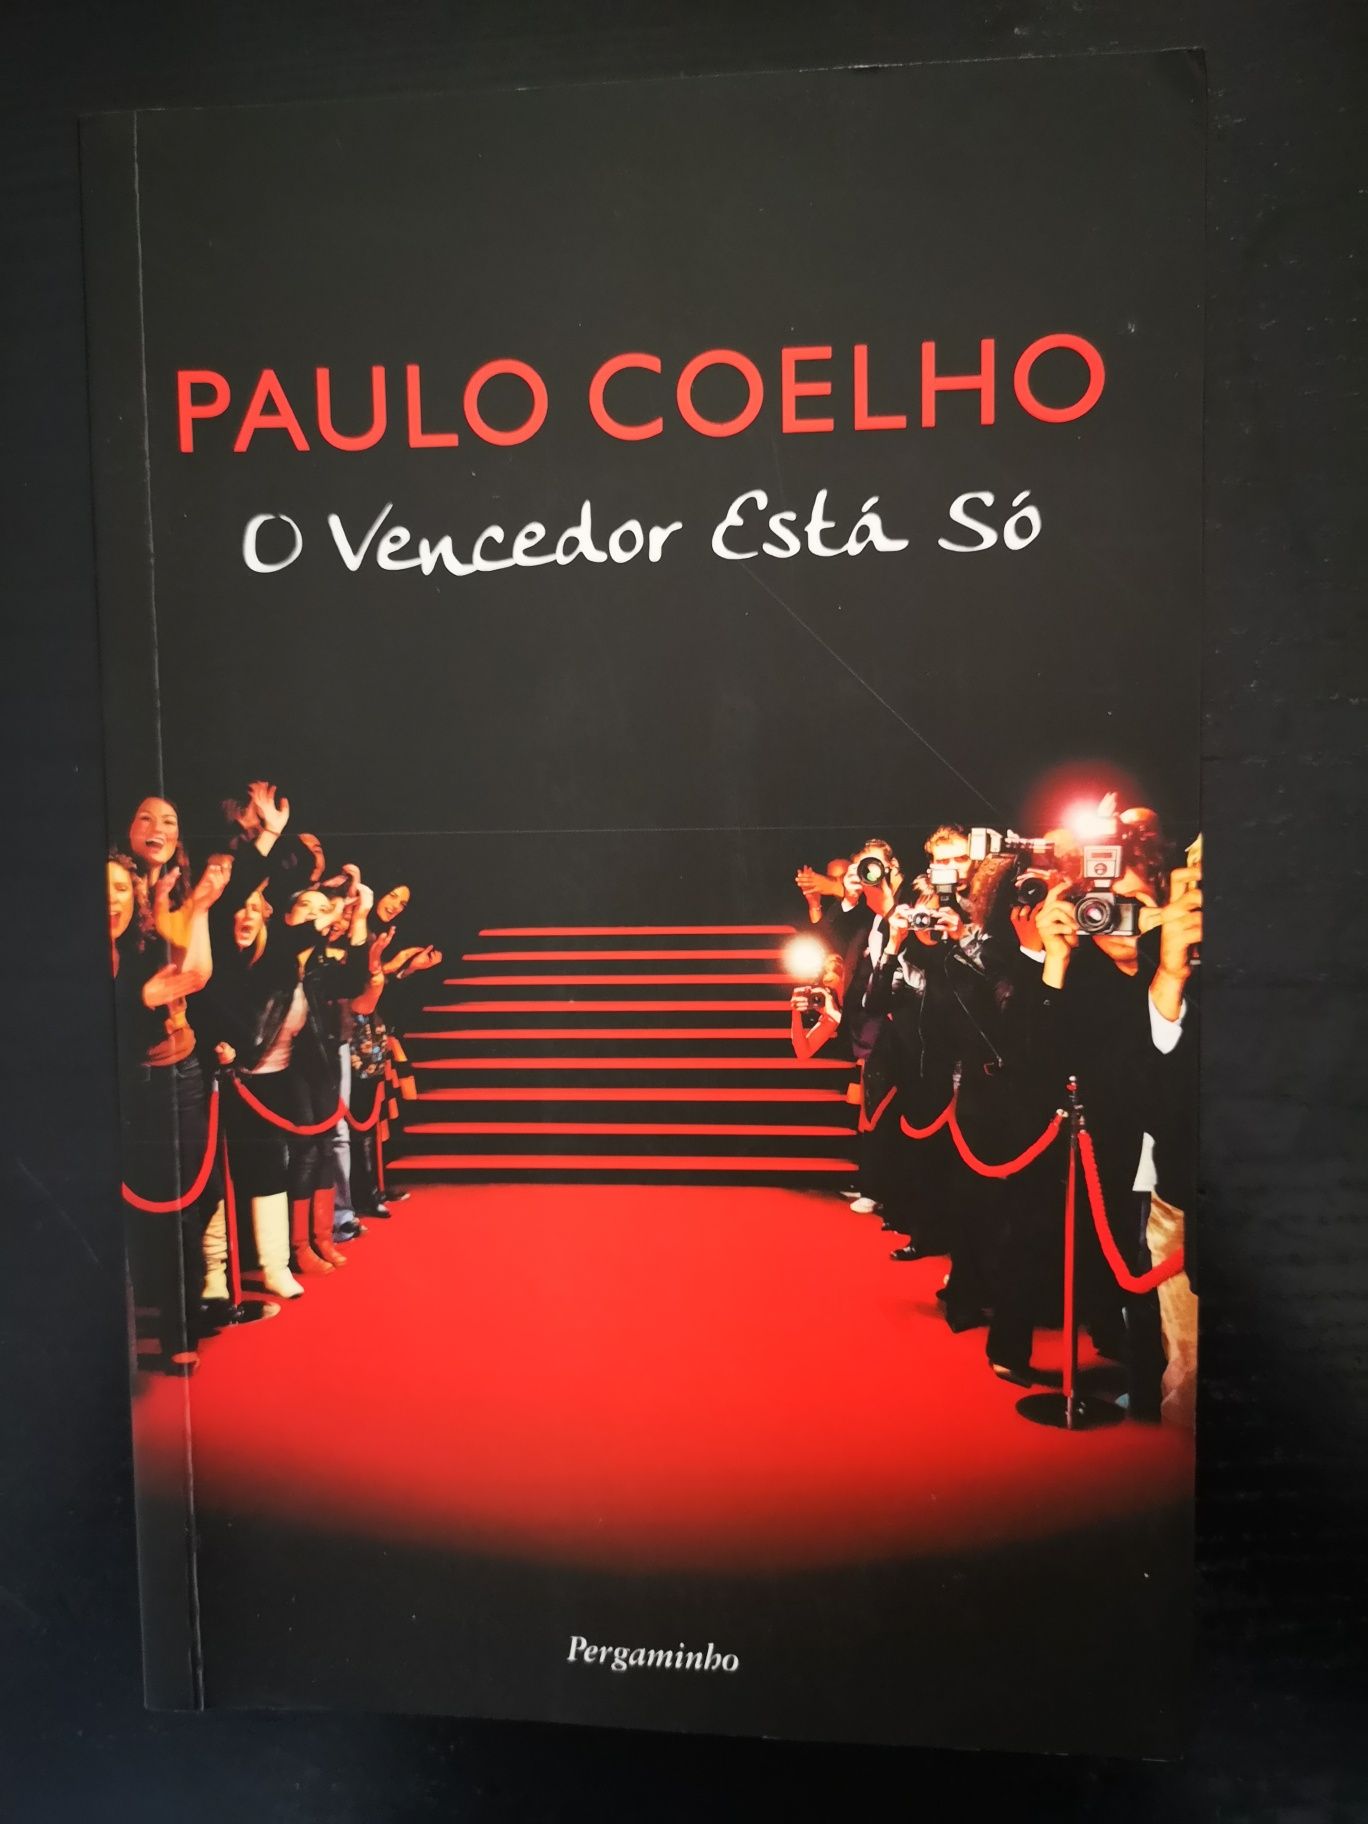 Paulo Coelho "O Vencedor Está só"